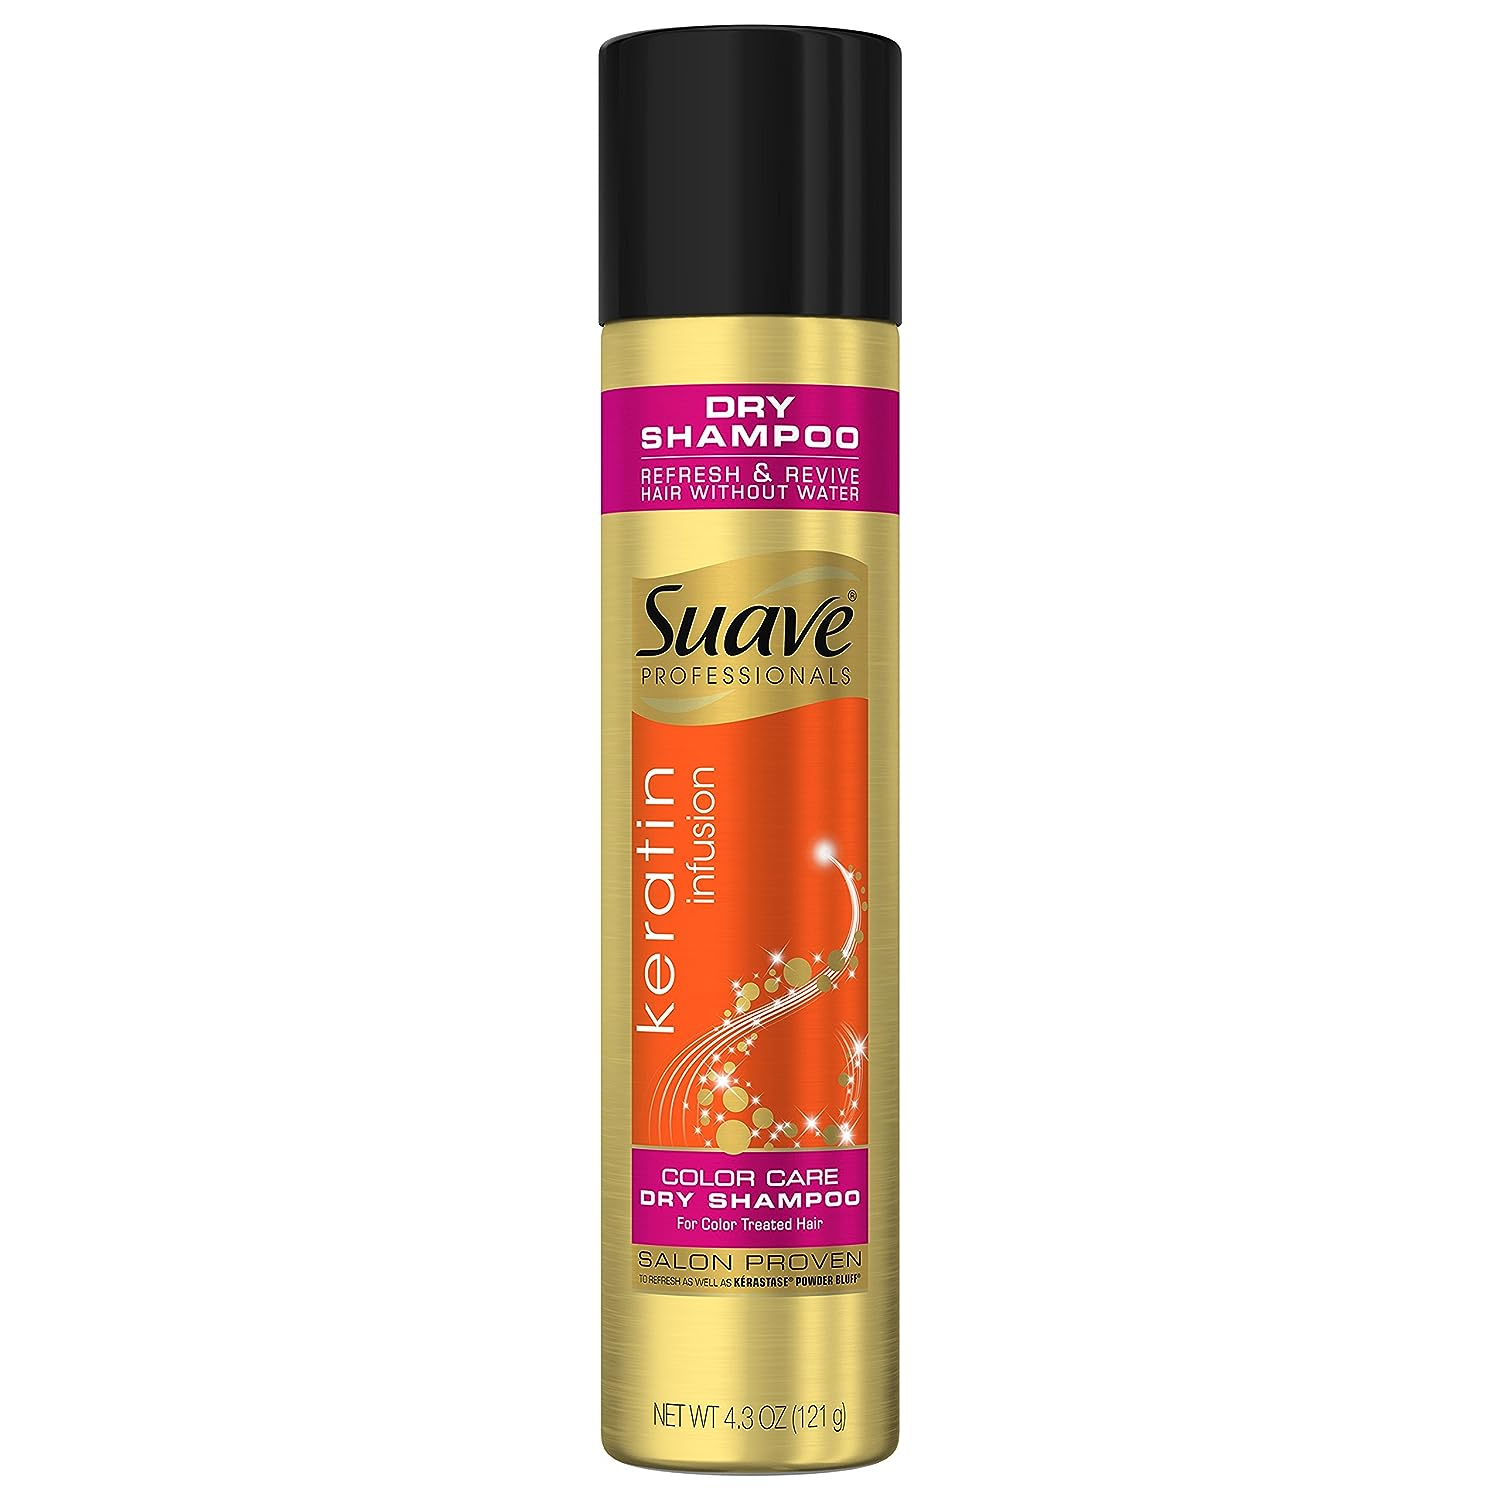 Suave Professionals Color Care Dry Shampoo